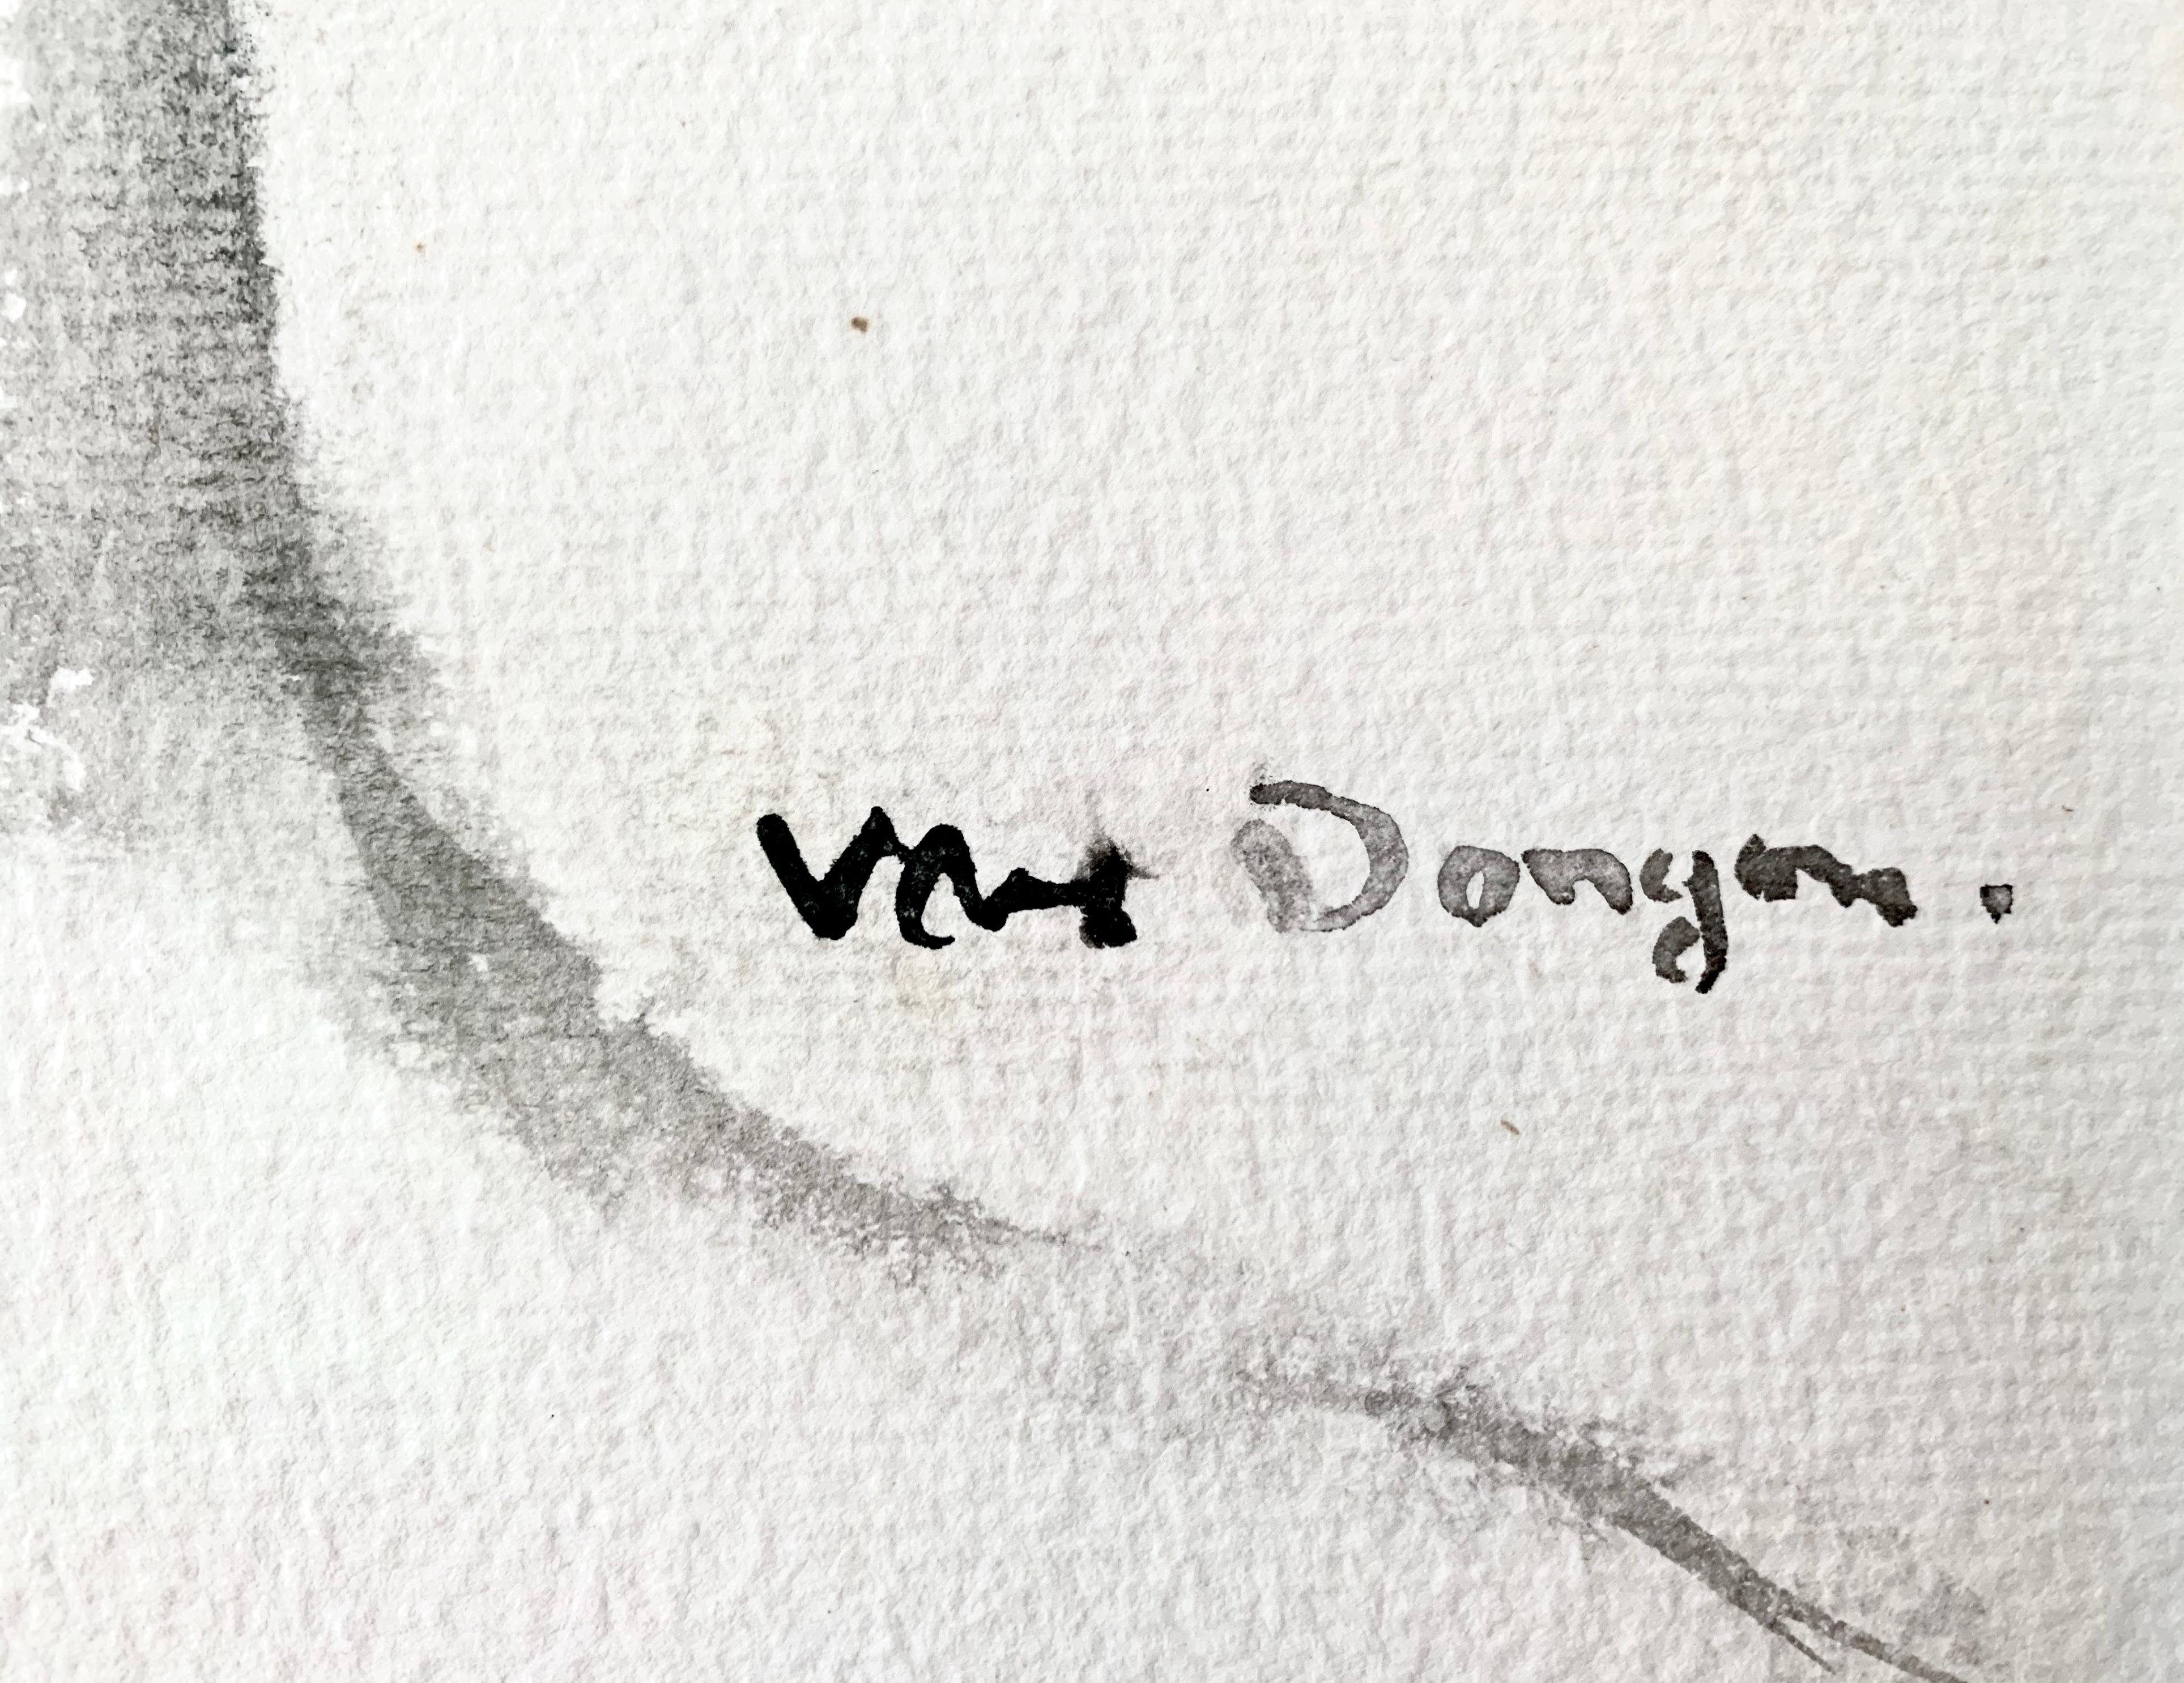 Kees van Dongen- Portrait einer Frau

Medium:
Aquarell auf cremefarbenem Büttenpapier

Jahr:
Ausgeführt ca. 1924

Abmessungen:
Blattgröße: 457 x 304 mm.
Rahmengröße: 76,0 x 61,0 cm

Unterschrift:
Signiert 'Van Dongen' unten rechts und signiert Kees